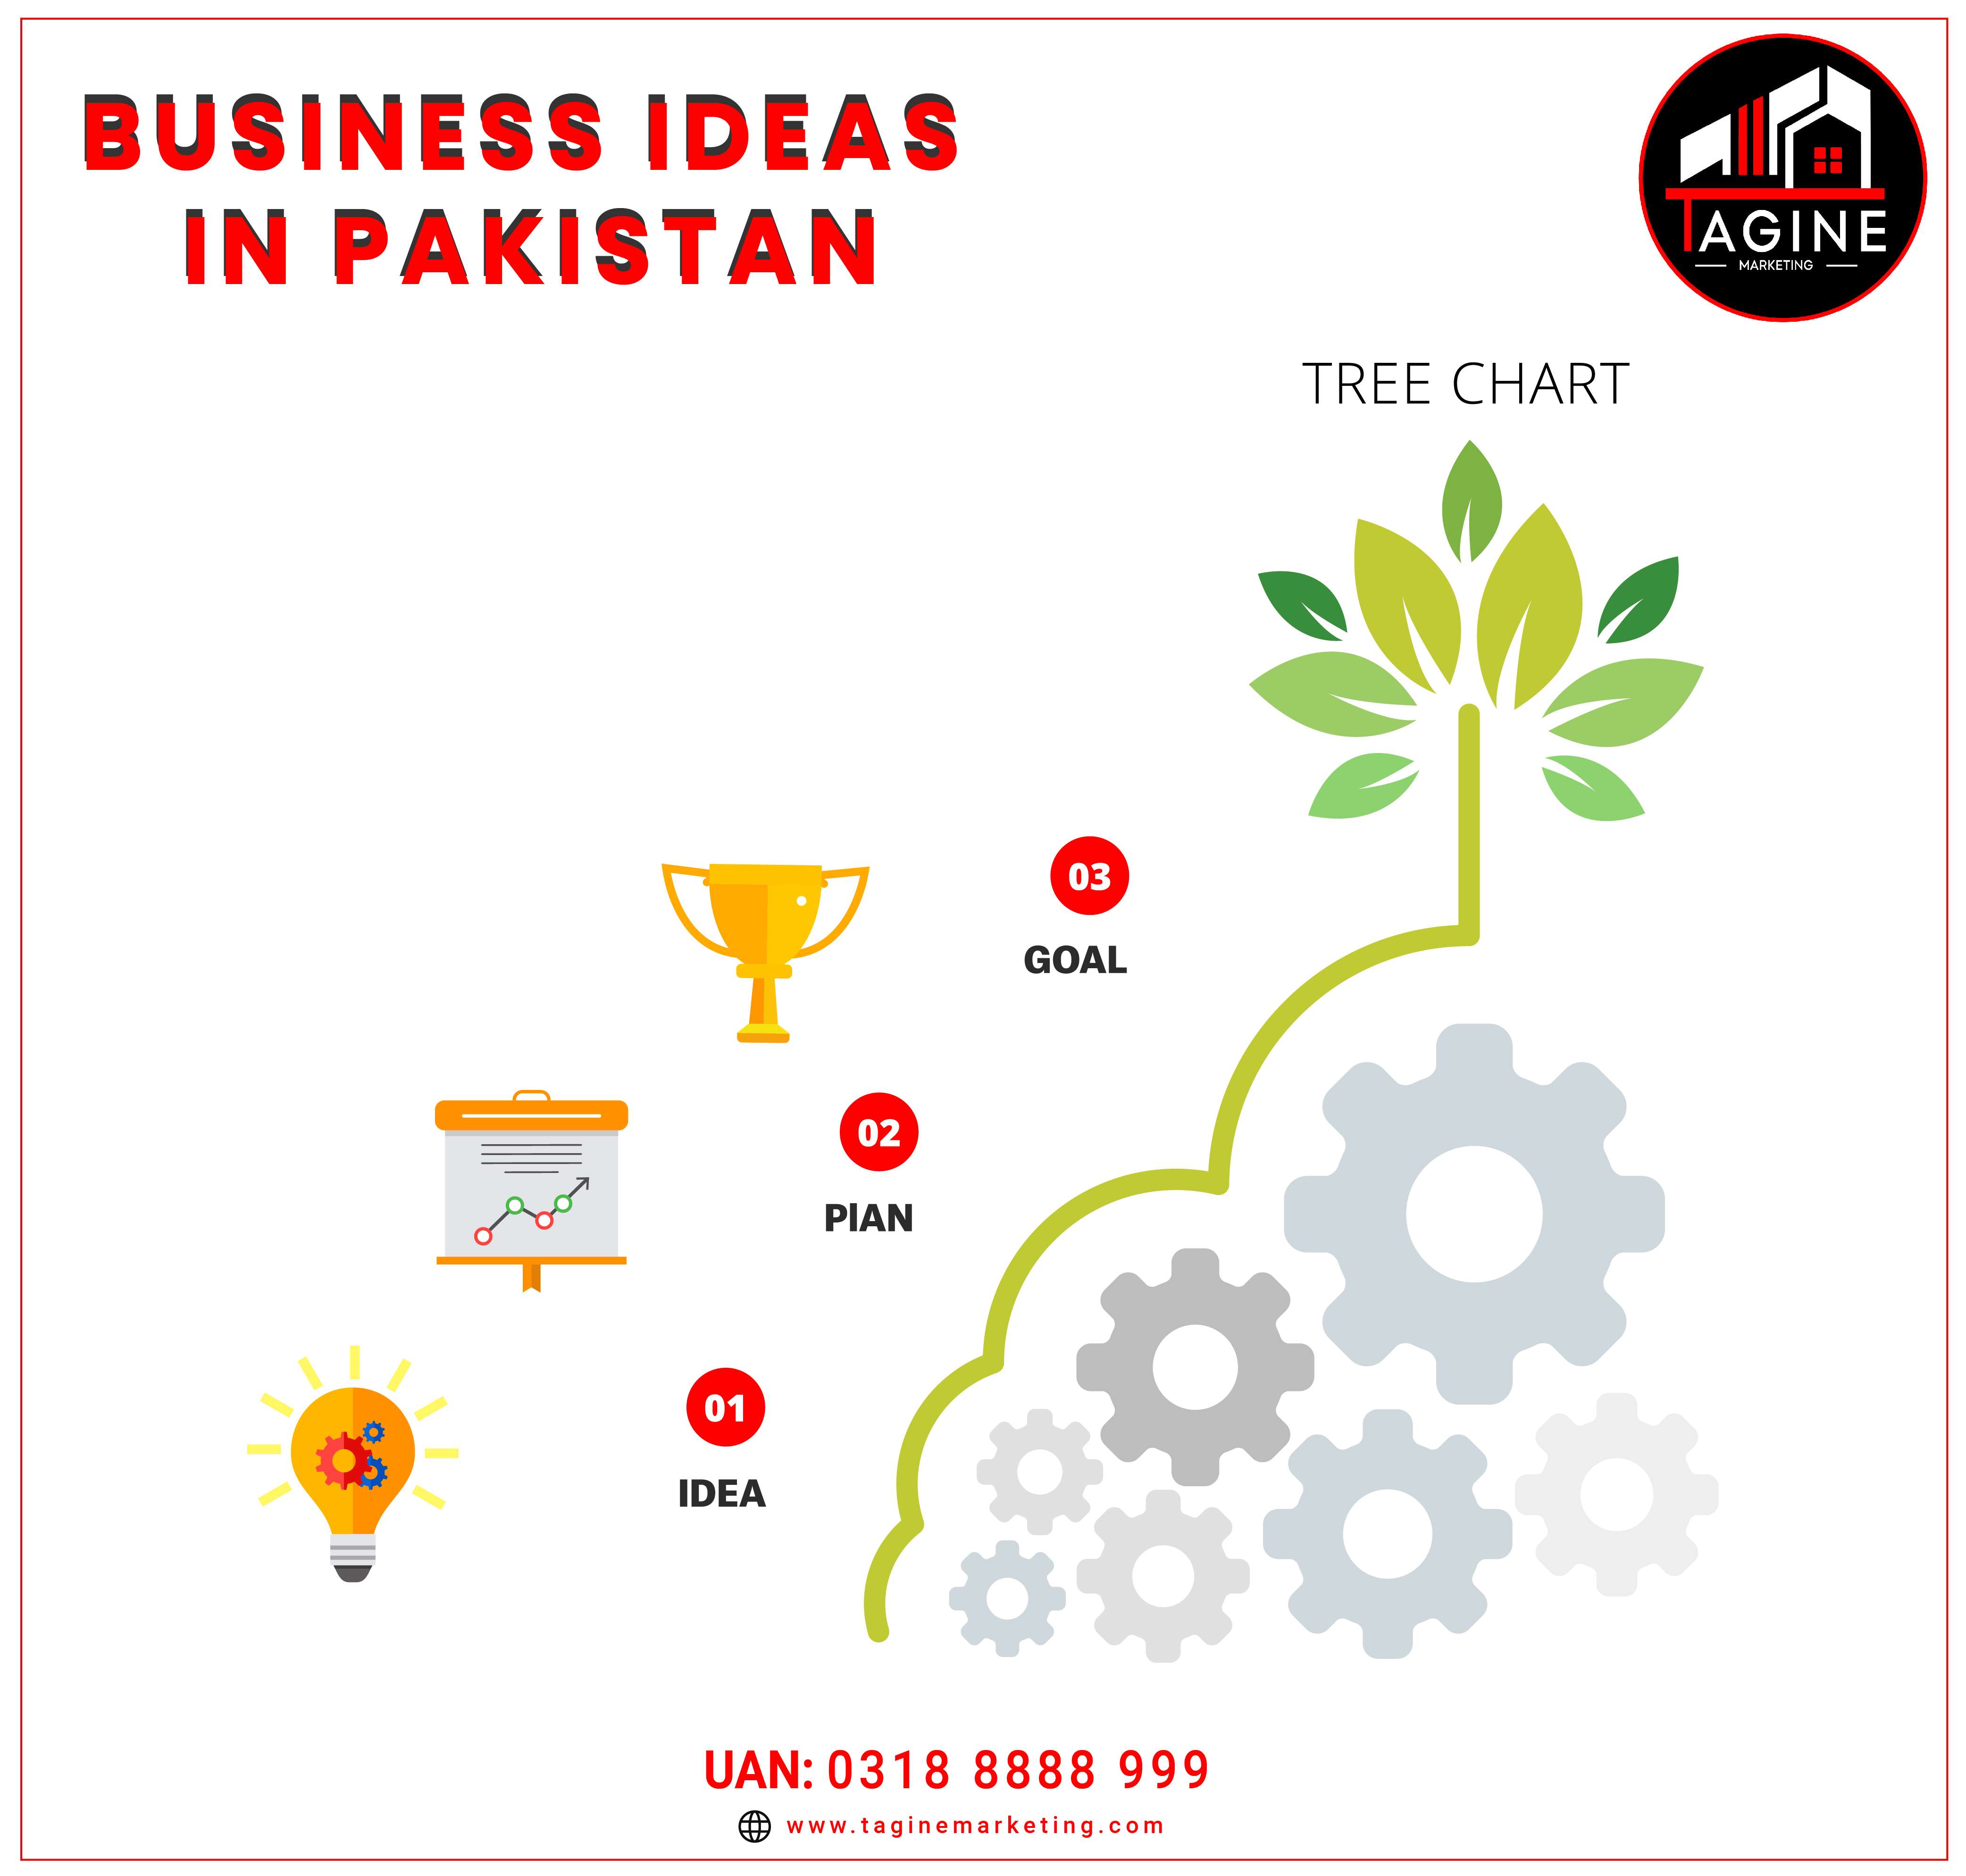 BUSINESS IDEAS IN PAKISTAN NEW-01